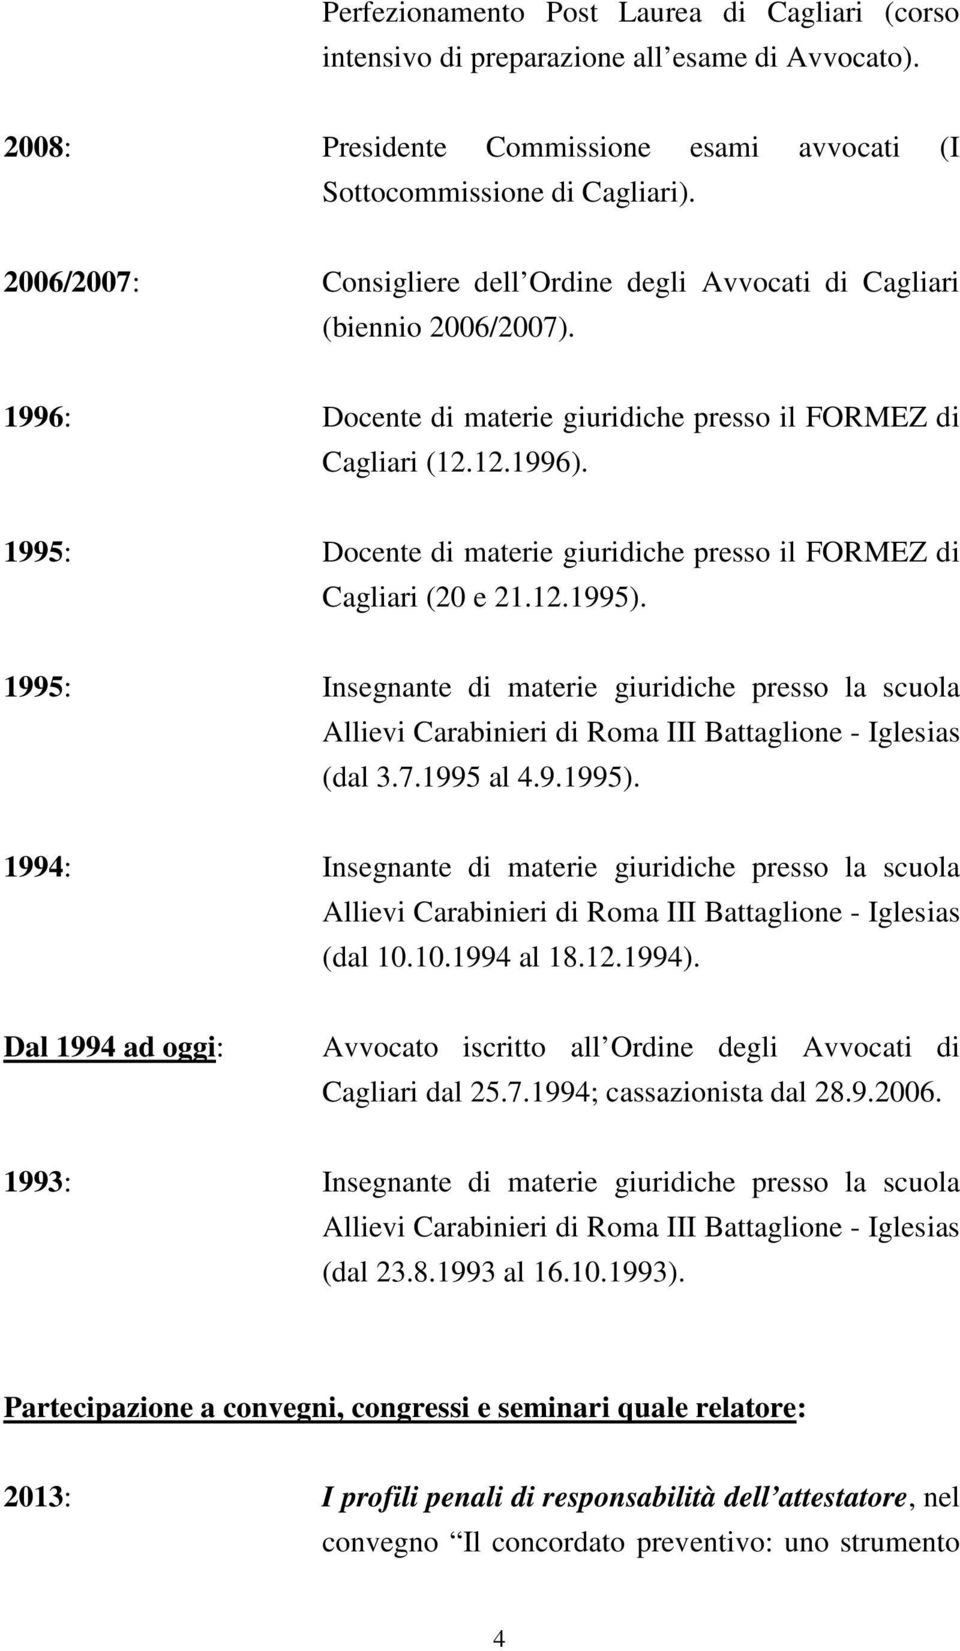 1995: Docente di materie giuridiche presso il FORMEZ di Cagliari (20 e 21.12.1995).